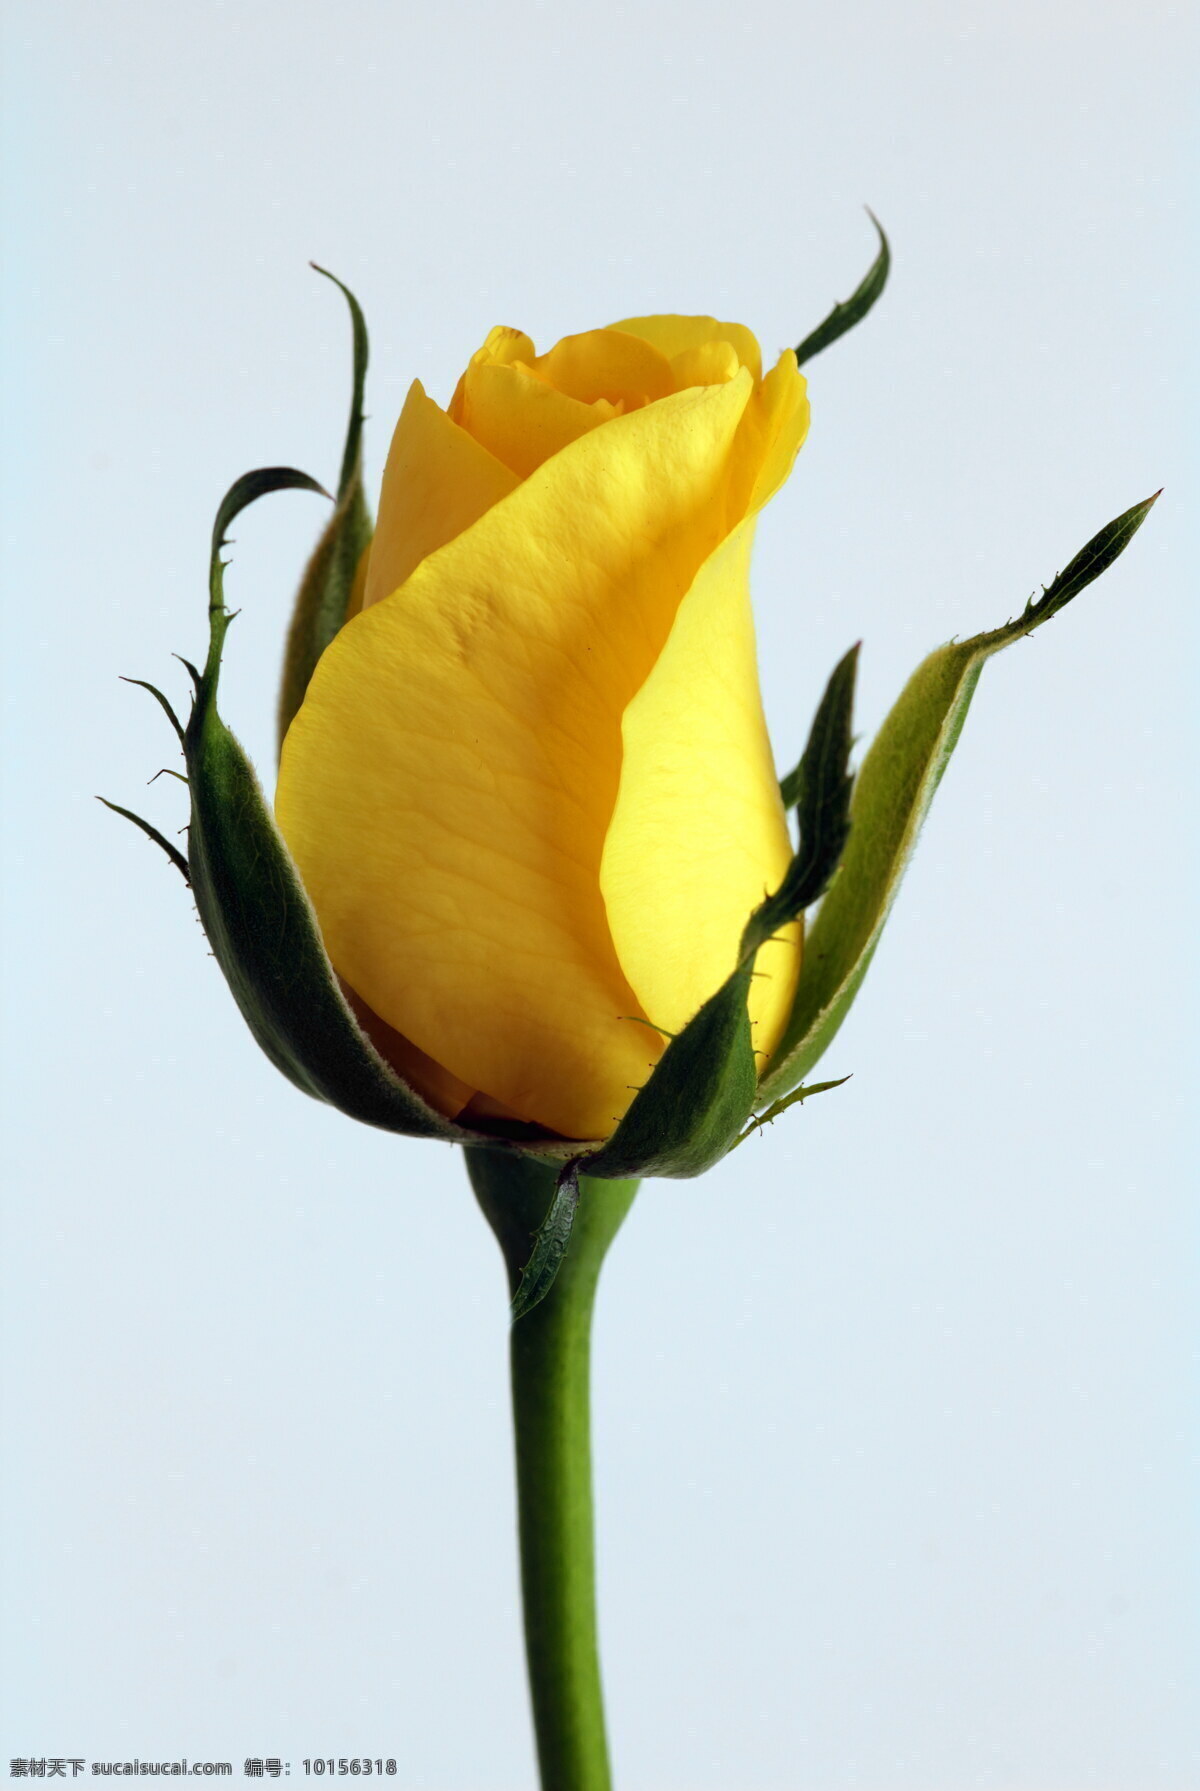 黄色玫瑰花苞 黄色 玫瑰花 花苞 黄花 黄色花朵 玫瑰 鲜花 花瓣 花枝 黄玫瑰 花卉 微距花朵 花草 植物 生物世界